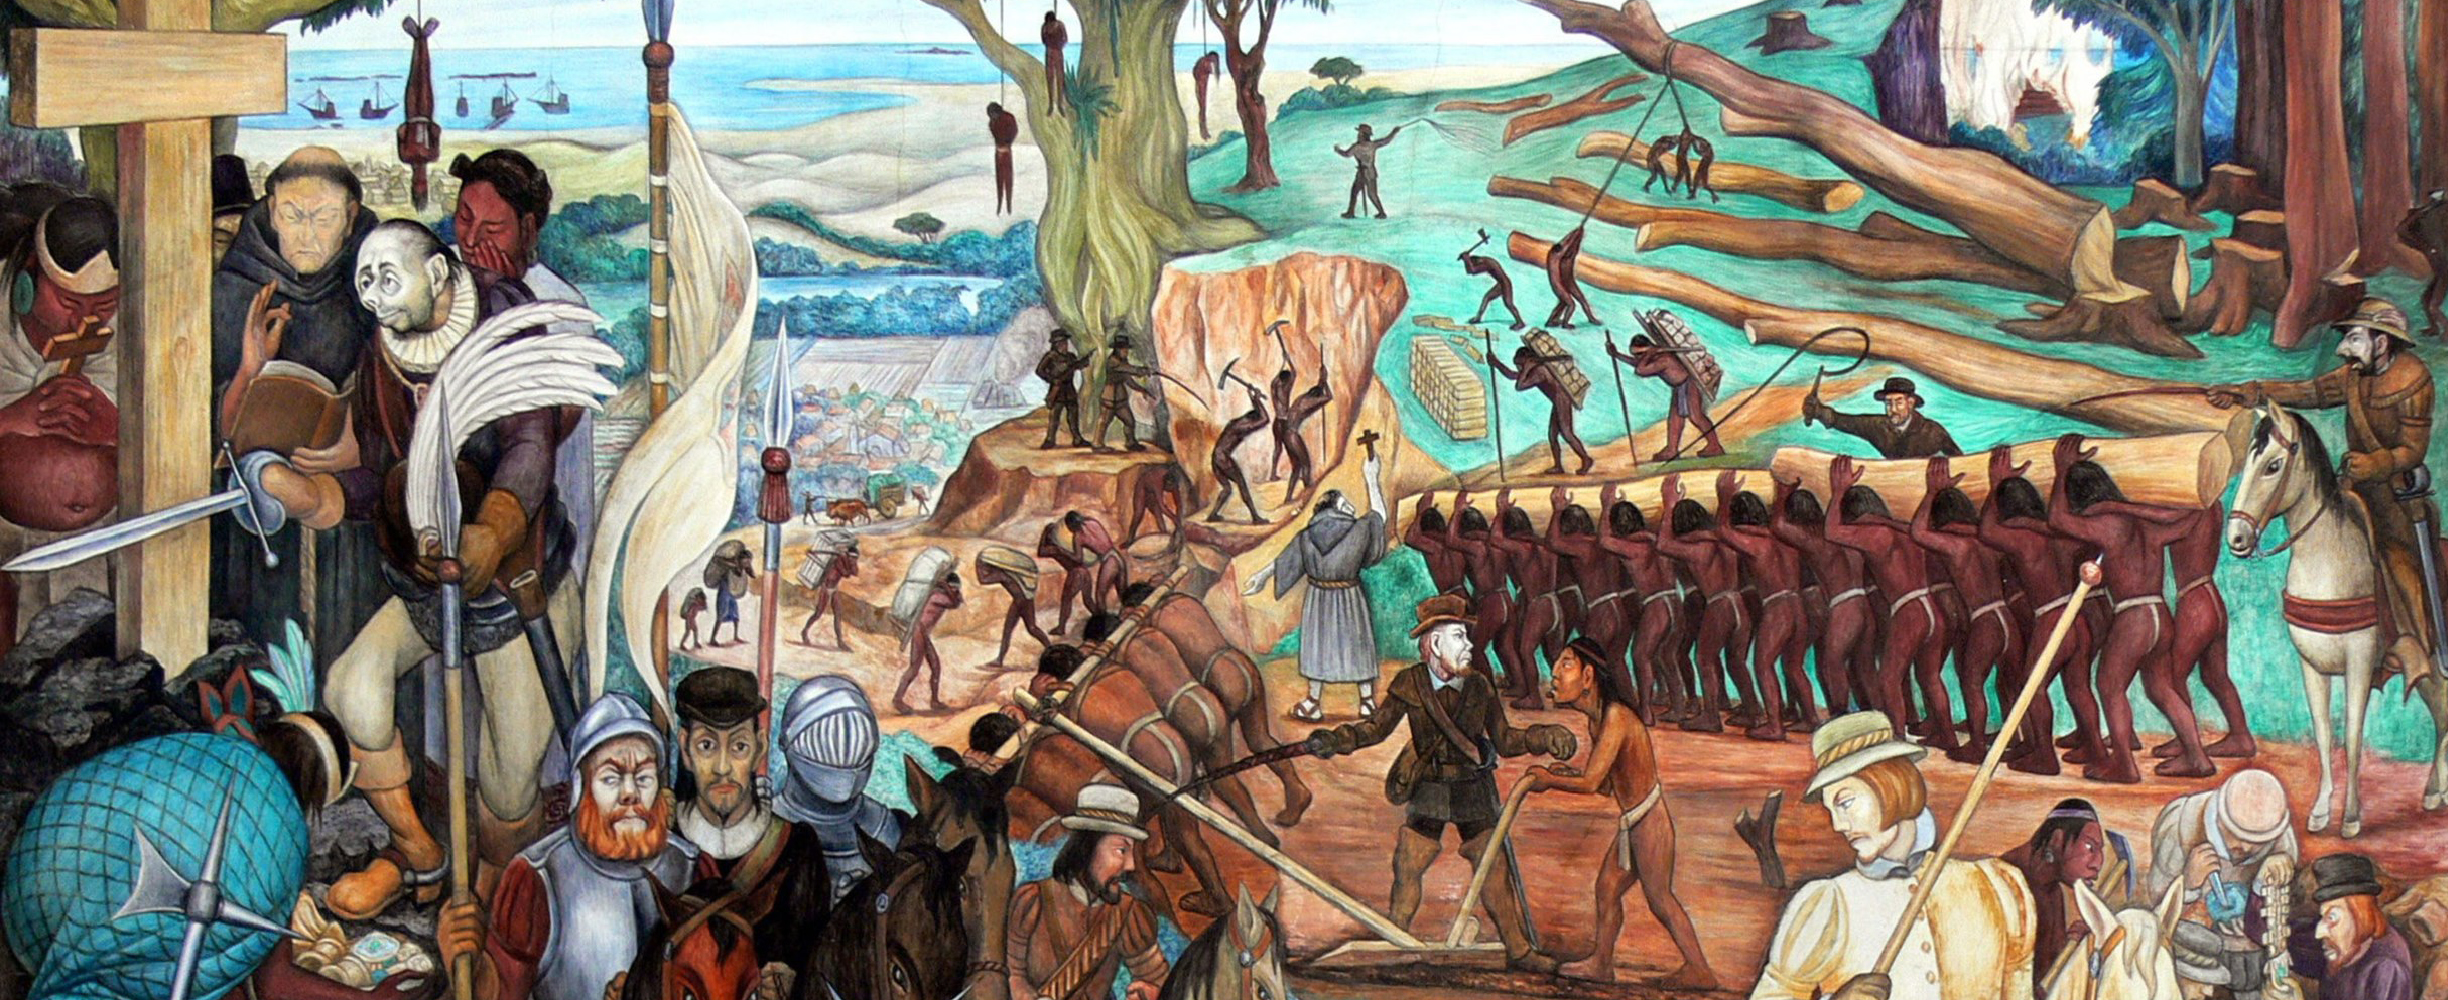 Värikäs maalaus, jossa tiiviisti kuvattuna Meksikon historian tapahtumia.